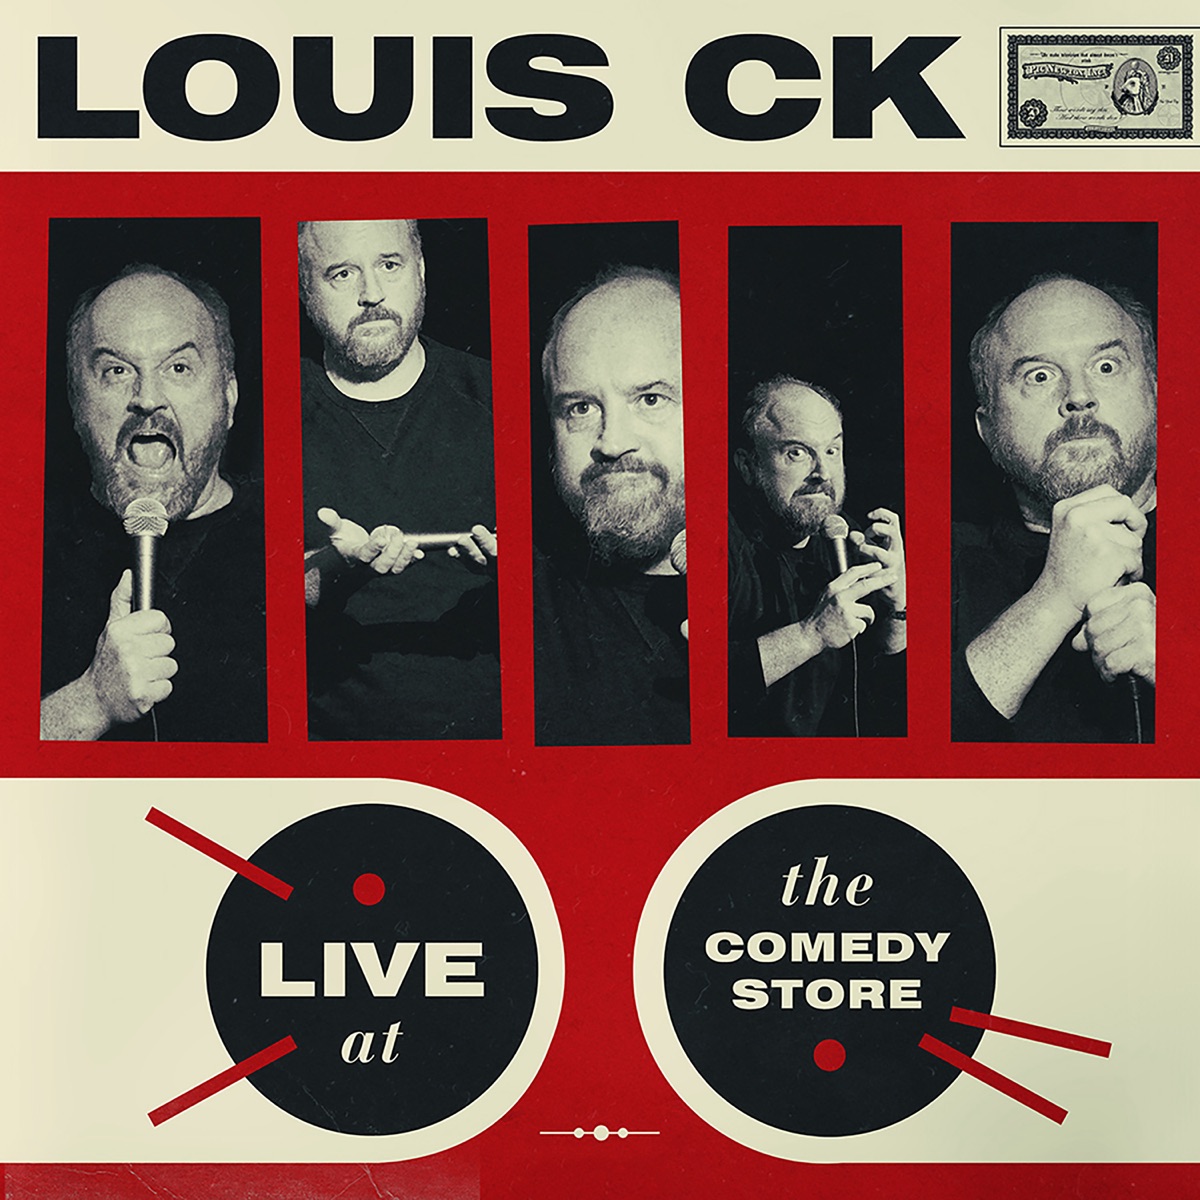 Sincerely Louis CK - Album by Louis C.K. - Apple Music